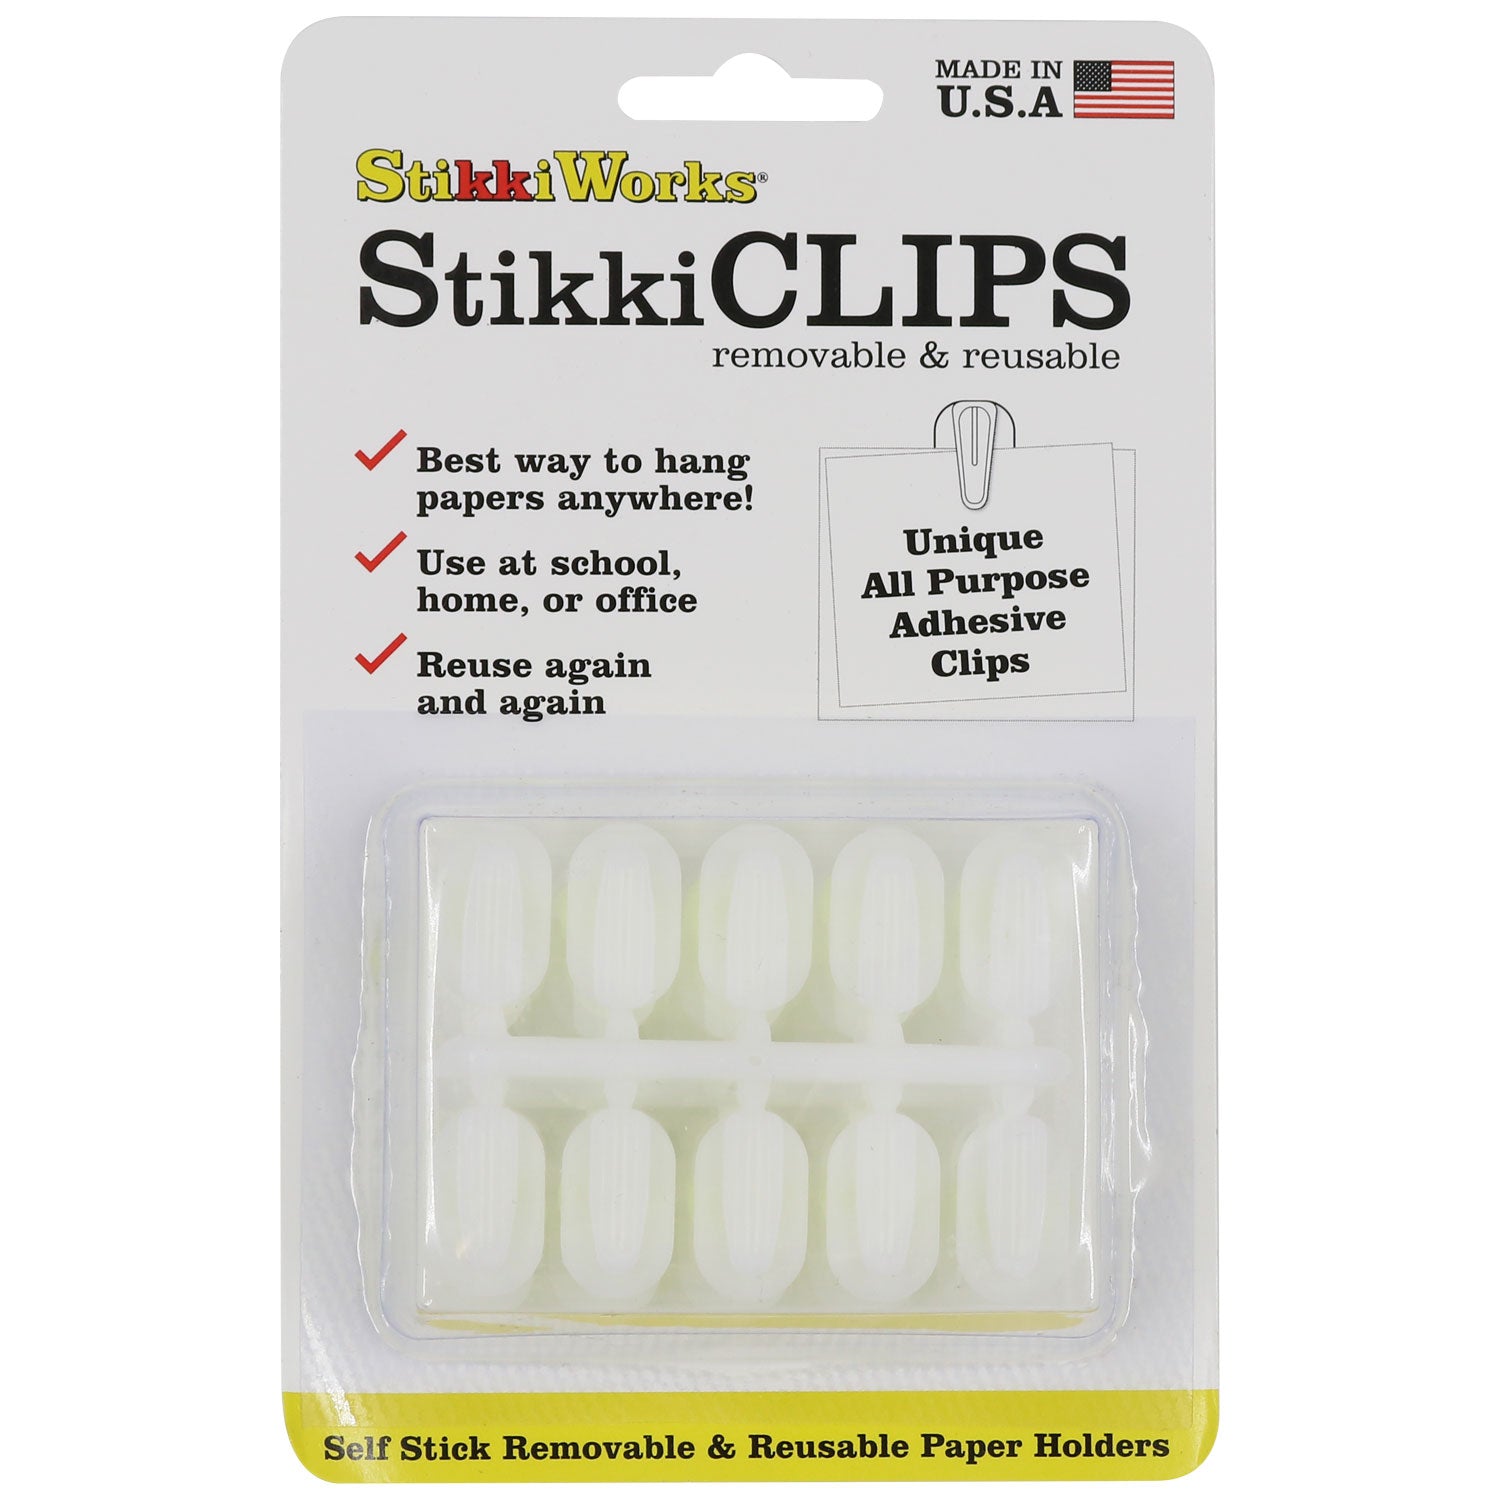 StikkiWAX™ Sticks 60ct (02000-60) – StikkiWorks